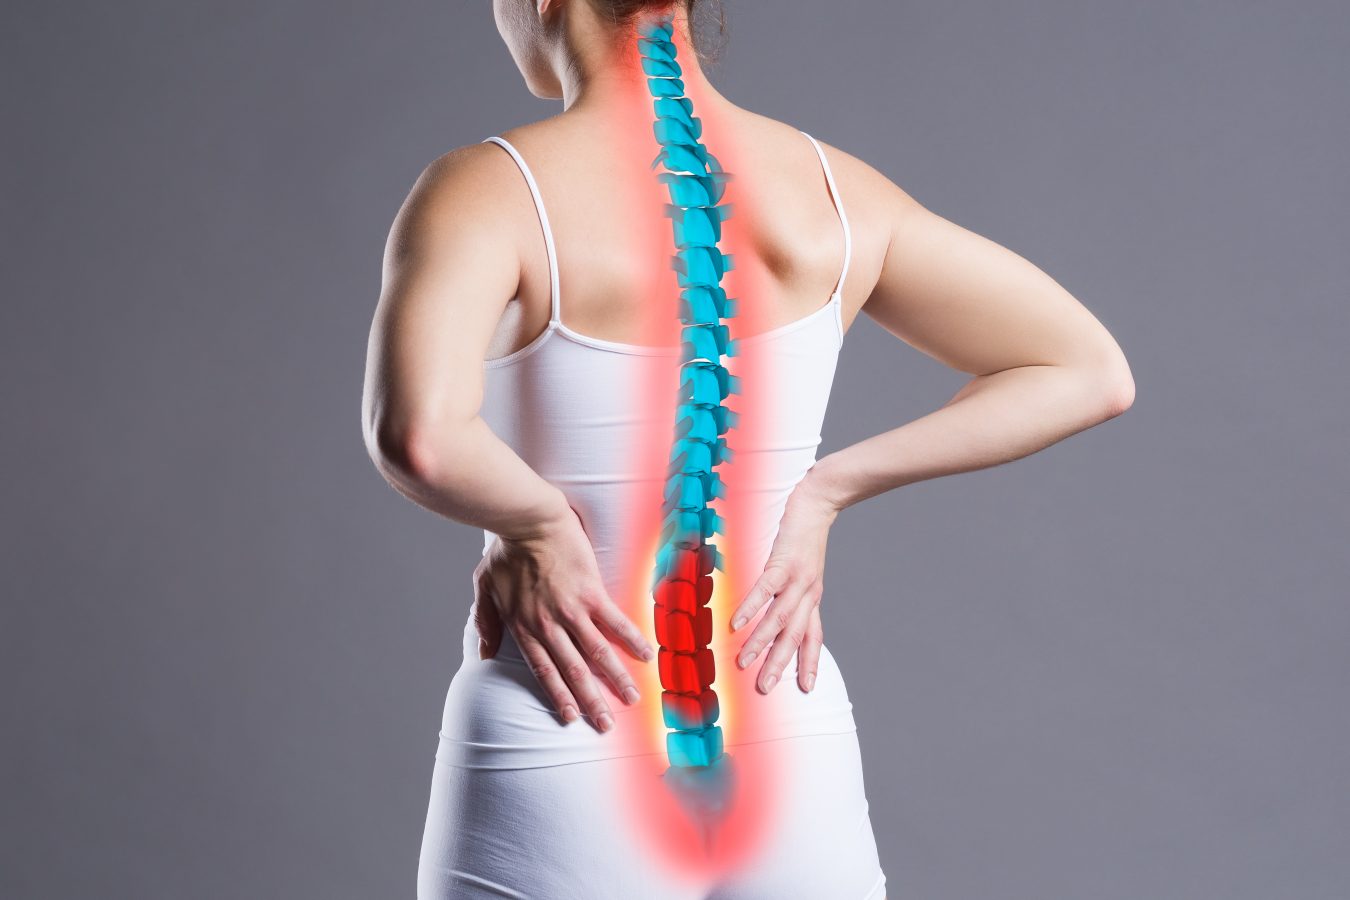 Lombosciatica, lumbago si alte tipuri de dureri de spate